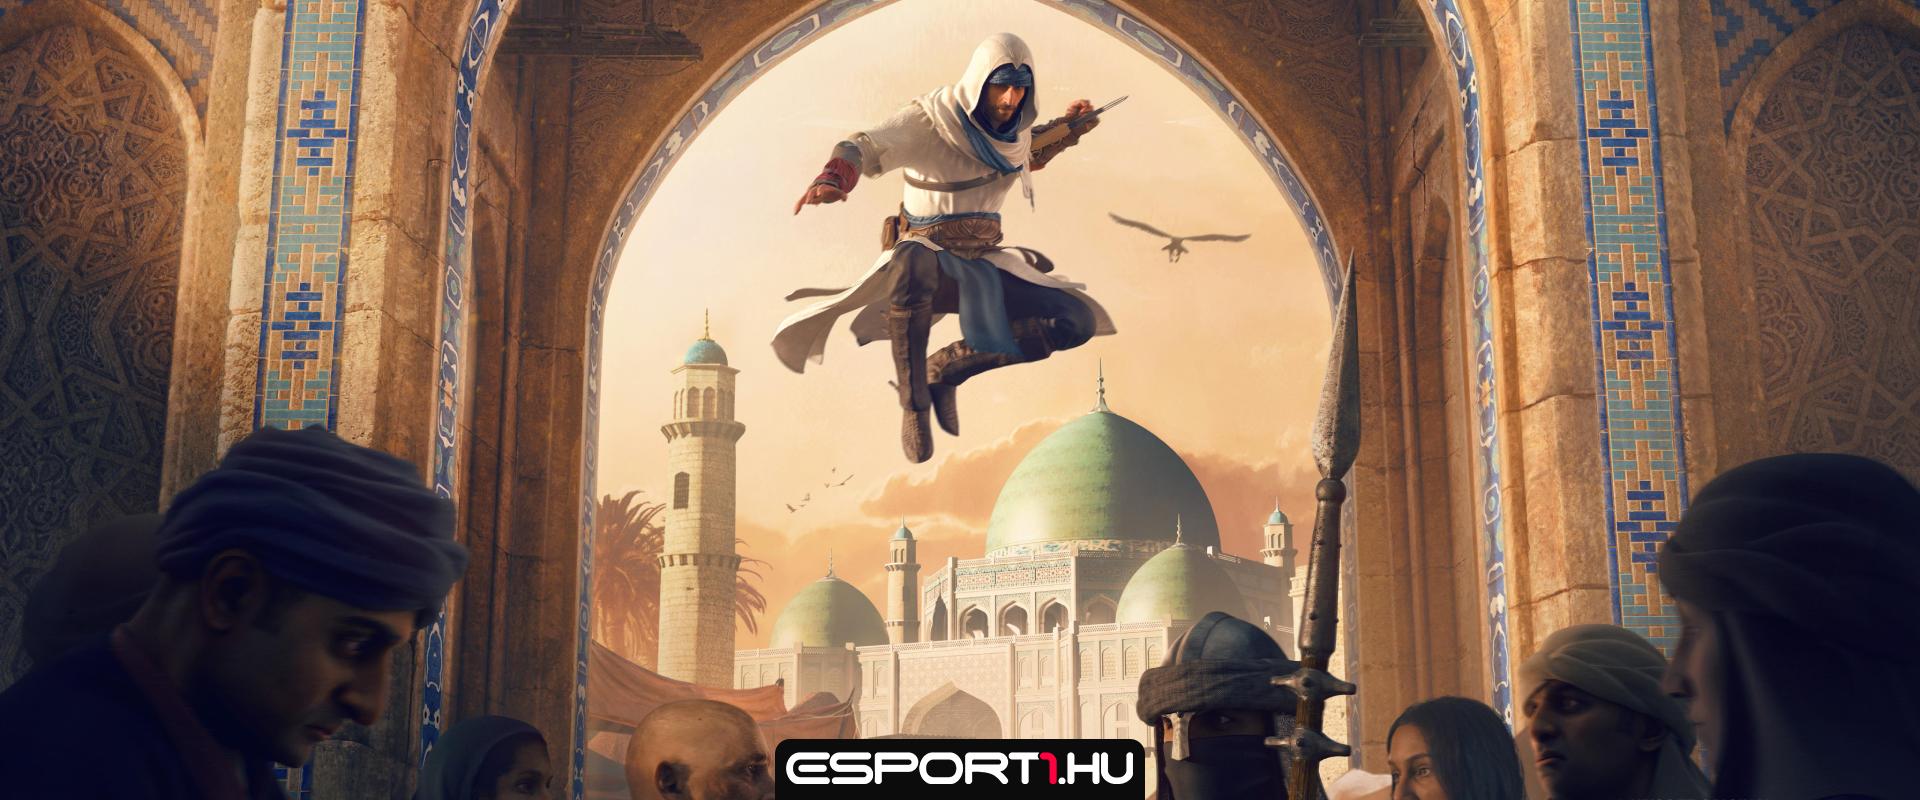 Több új Assassin's Creed bejelentés is lehet a szombati Ubisoft Forwardon